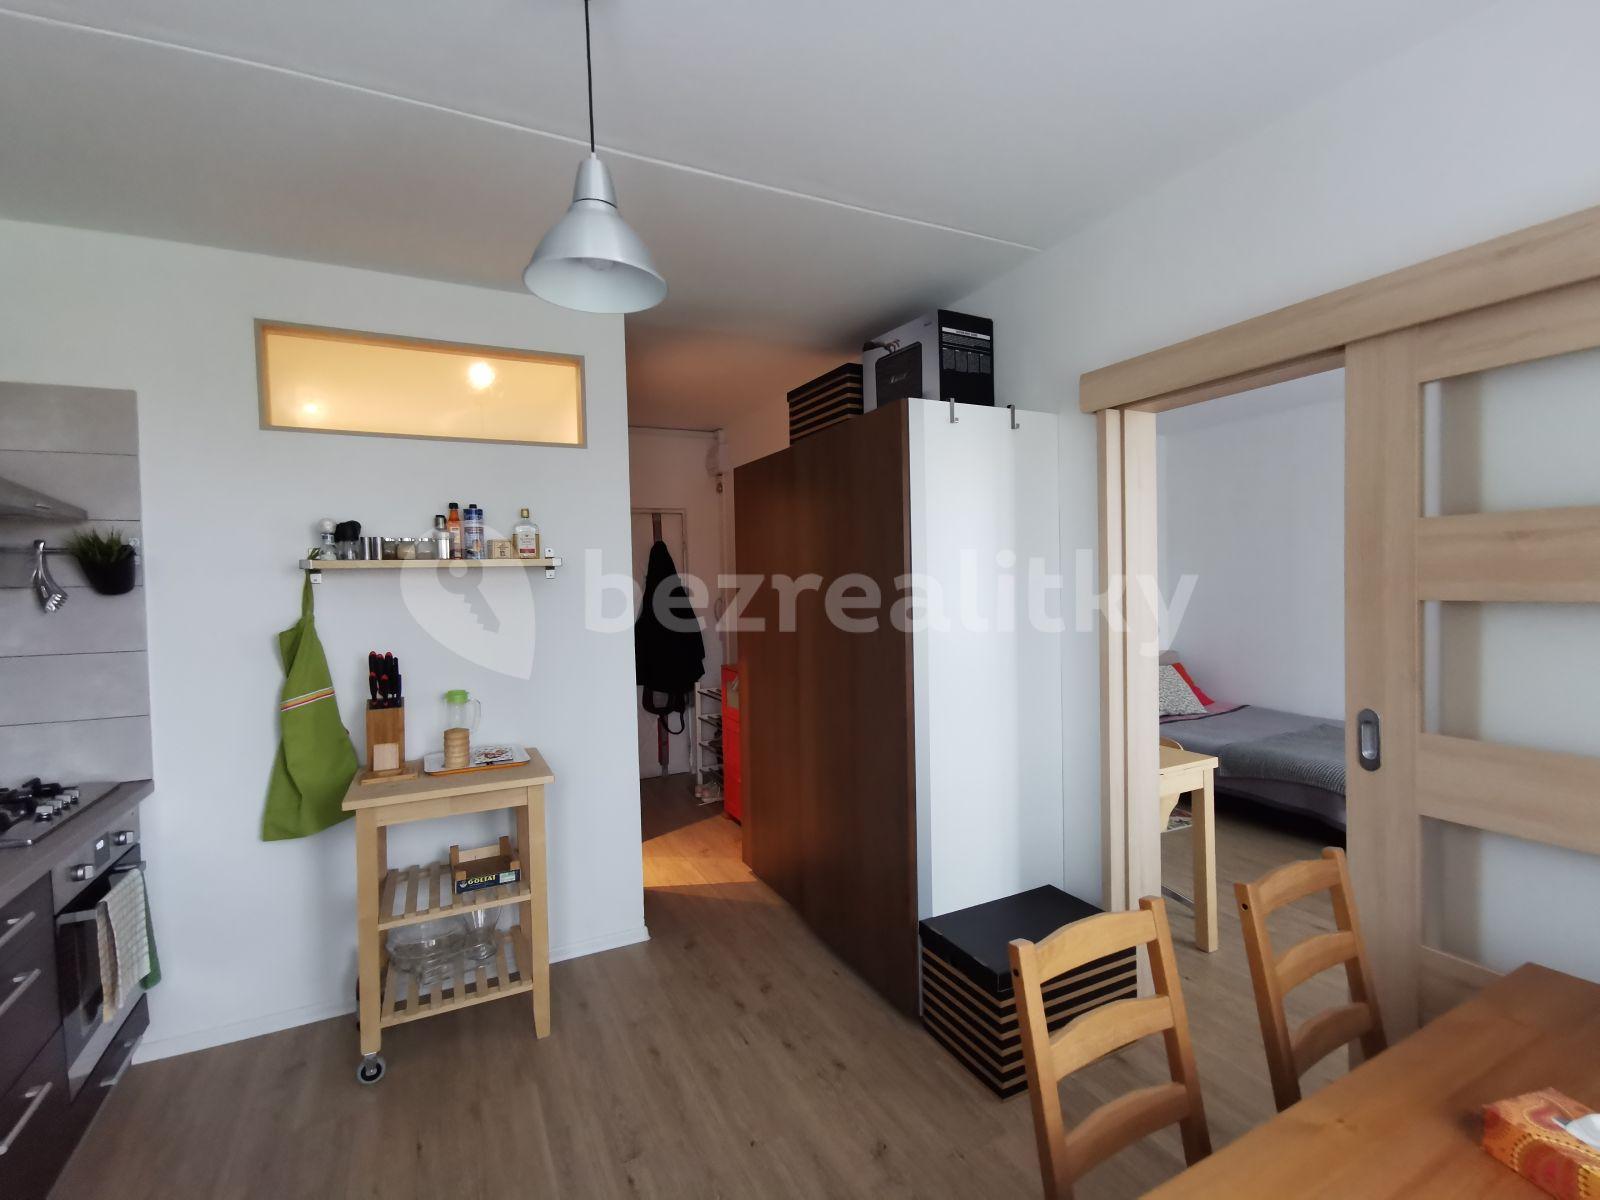 1 bedroom flat to rent, 38 m², Hrubínova, Hradec Králové, Královéhradecký Region